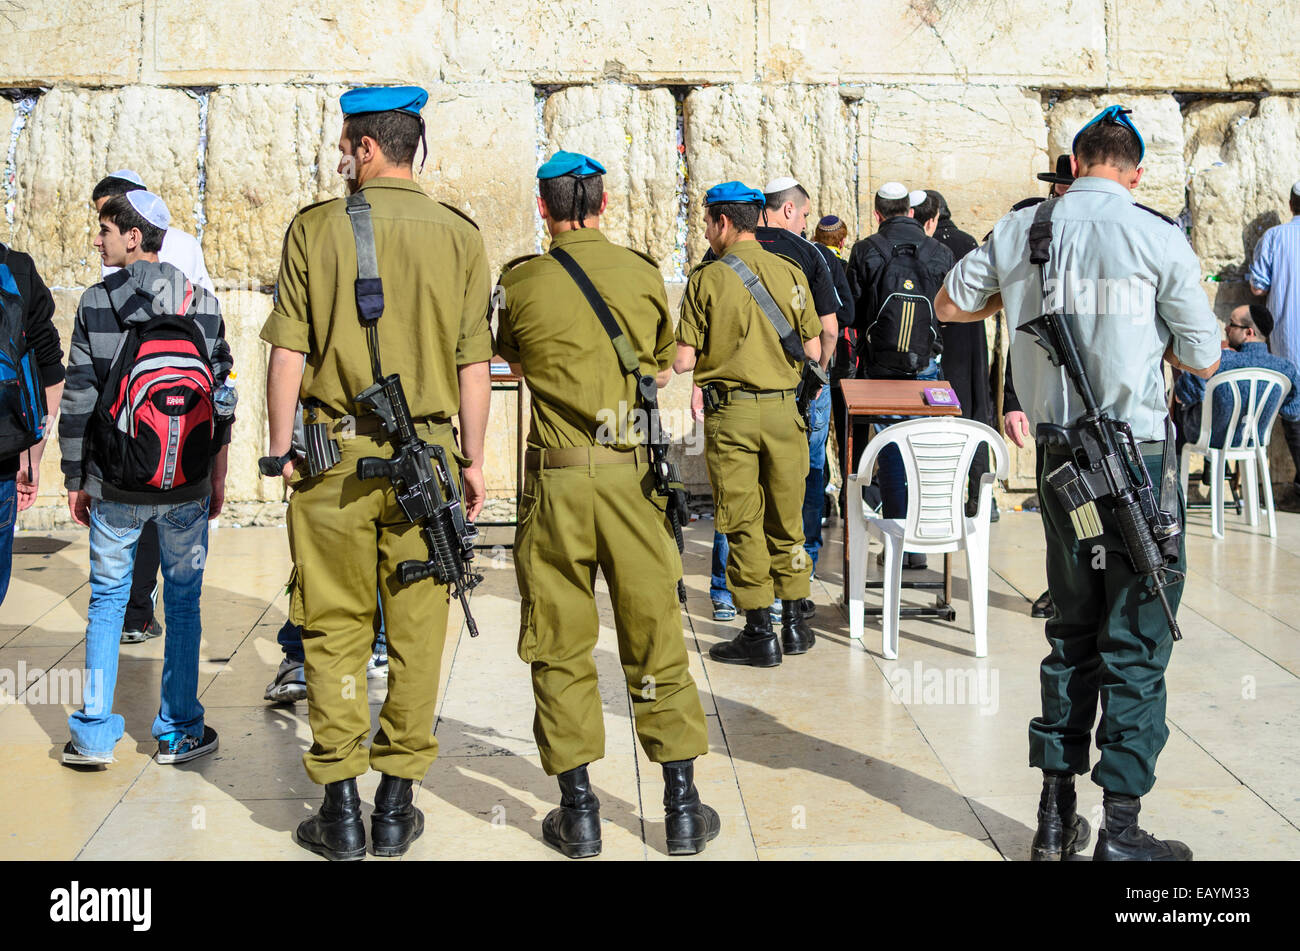 Jerusalén, Israel - 23 de febrero de 2012: Los soldados israelíes permanecen en guardia en el Muro Occidental. Foto de stock